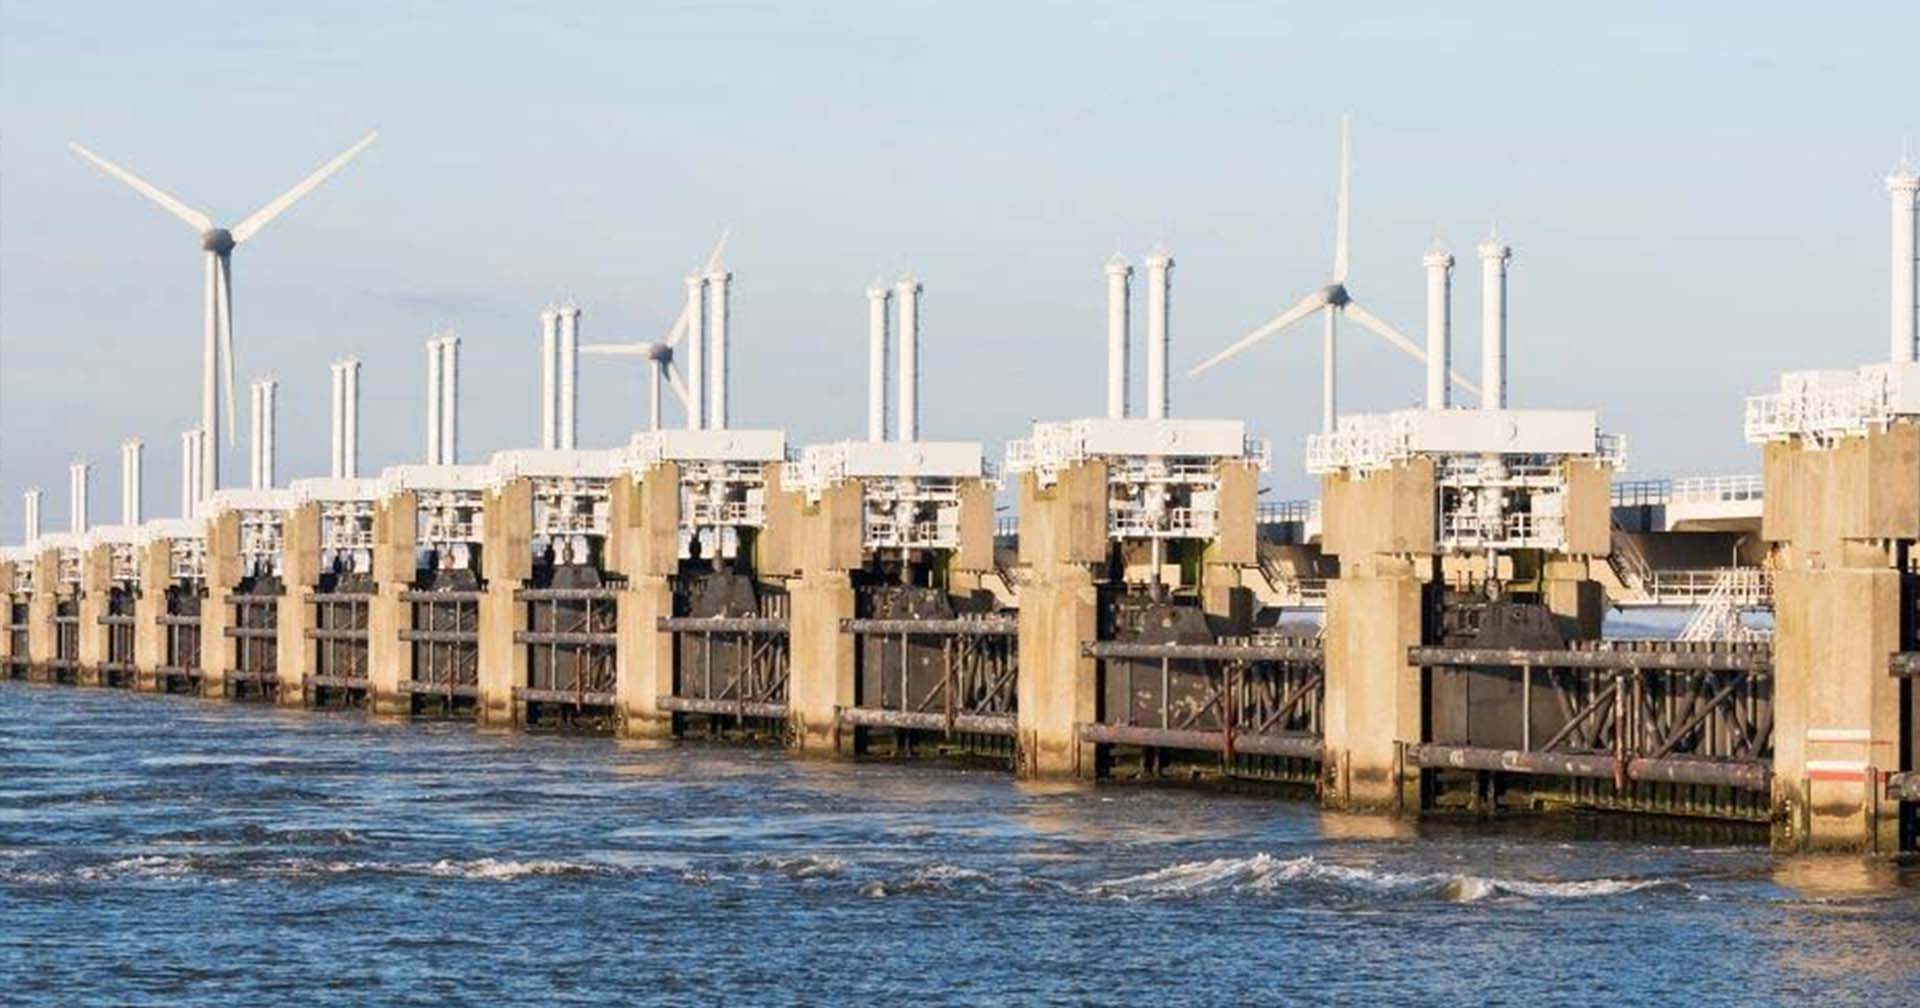 ‘Delta Works’ สุดยอดโครงการป้องกันน้ำท่วมที่ เนเธอร์แลนด์ สร้างเพราะน้ำท่วมในประเทศบ่อย